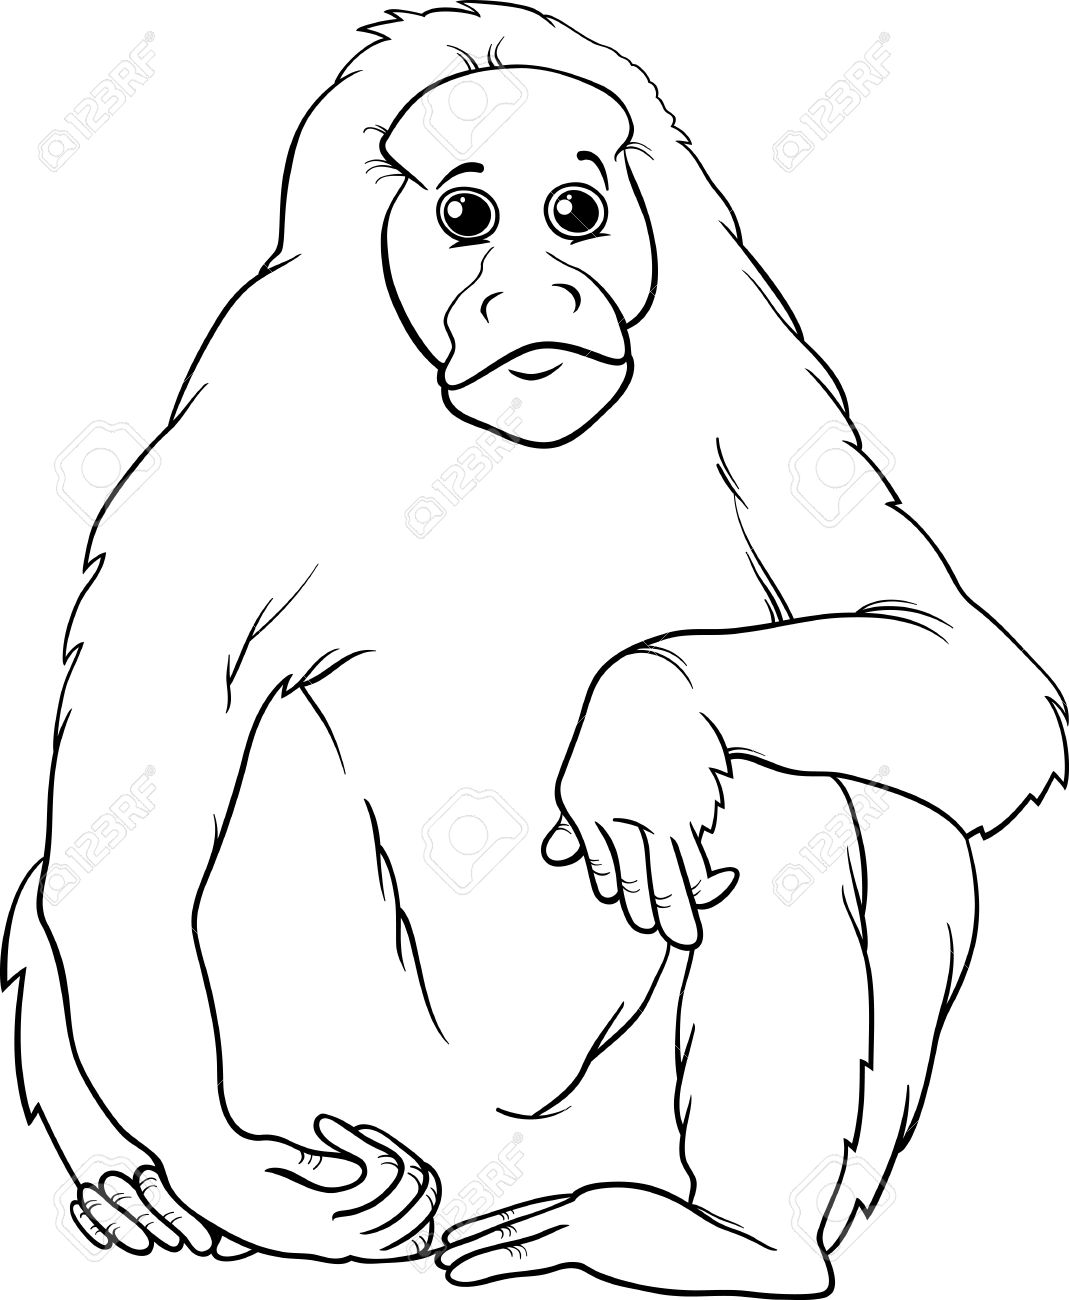 Primate coloring #5, Download drawings